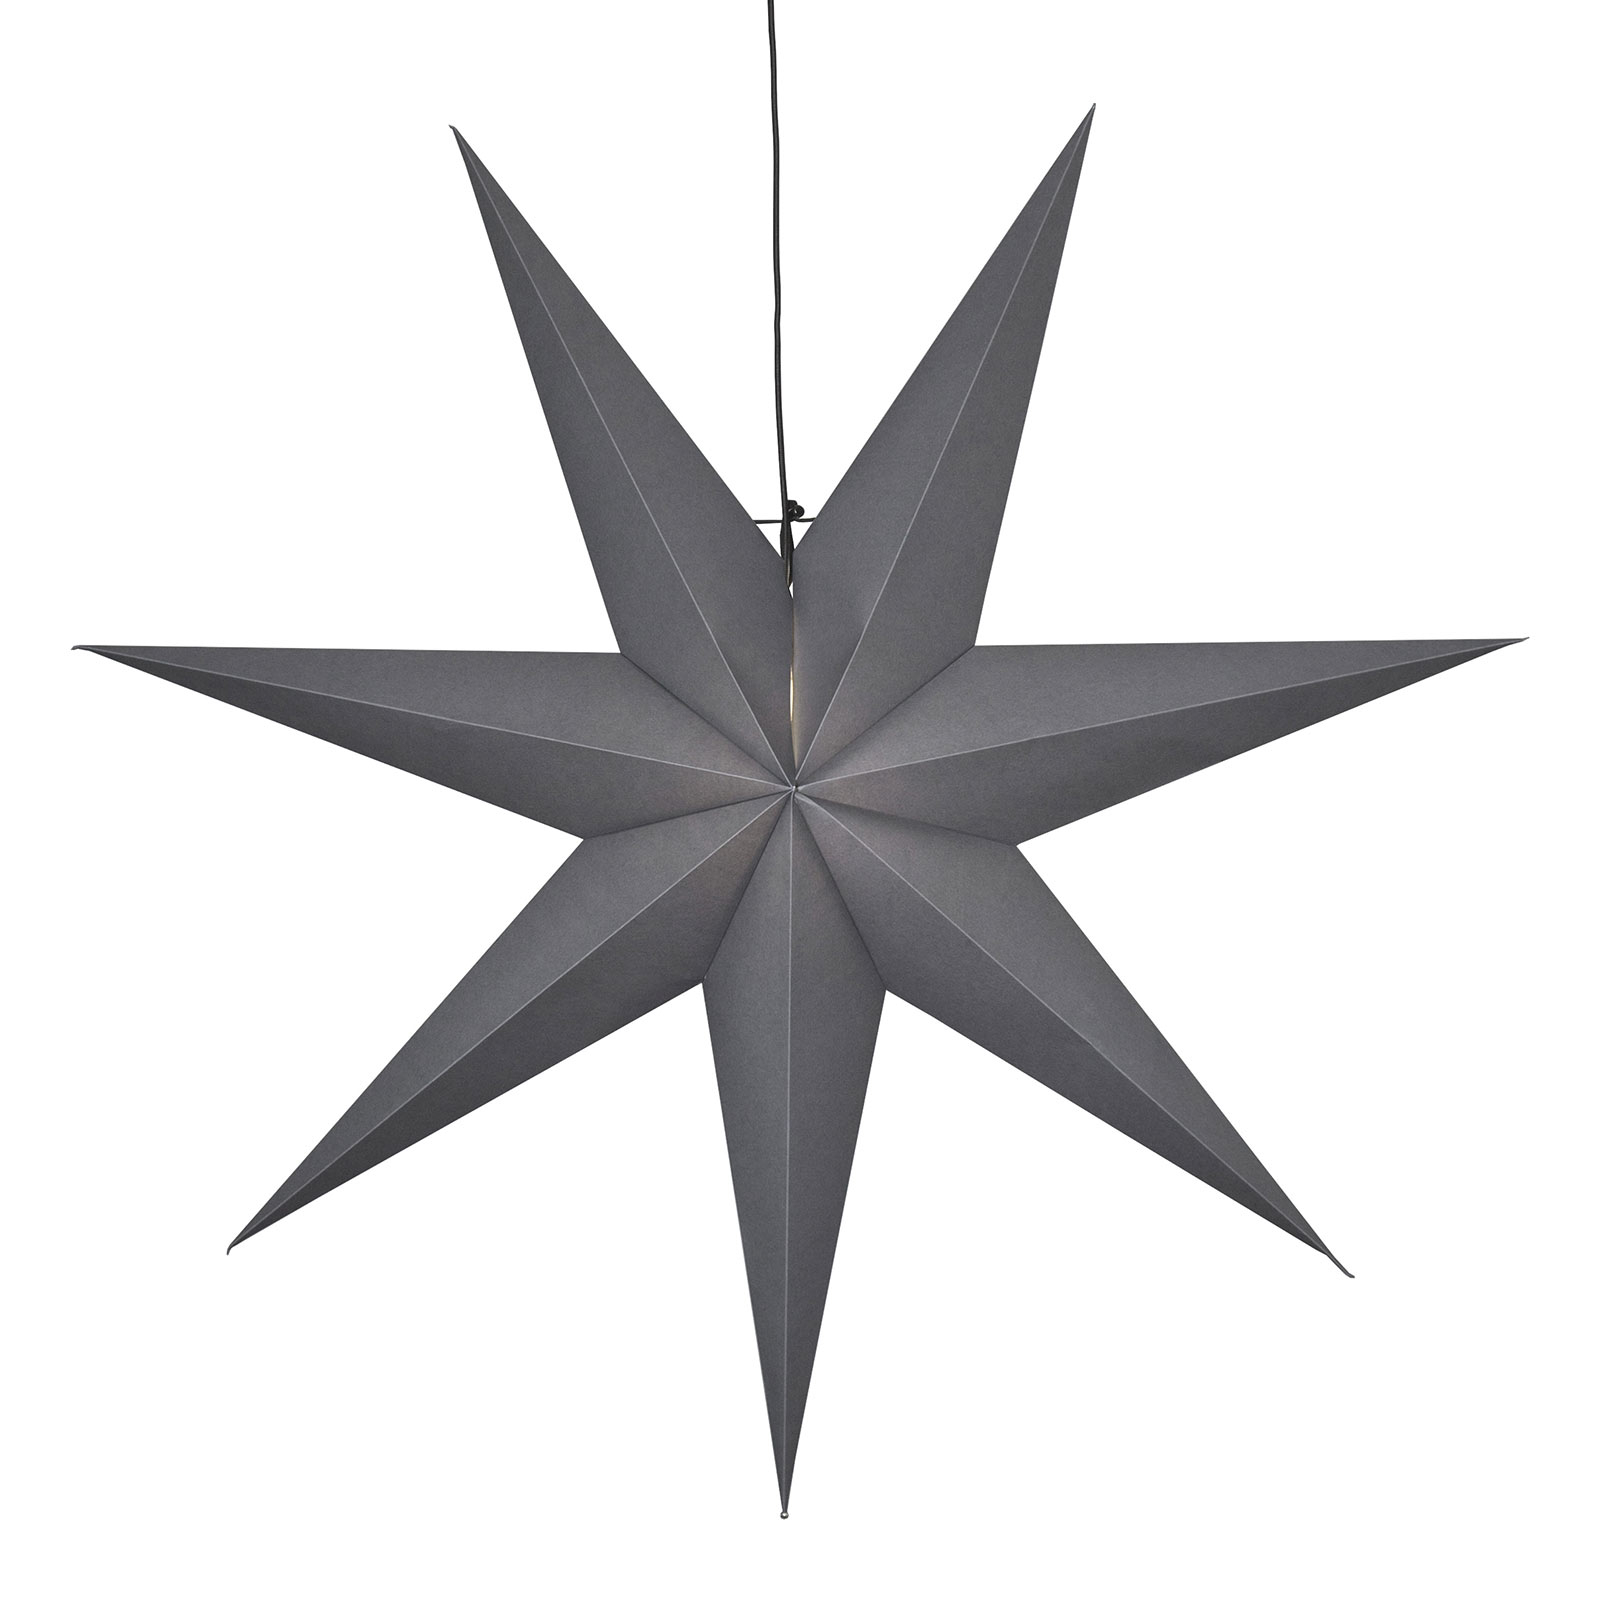 Papírová hvězda Ozen sedmicípá Ø 100 cm